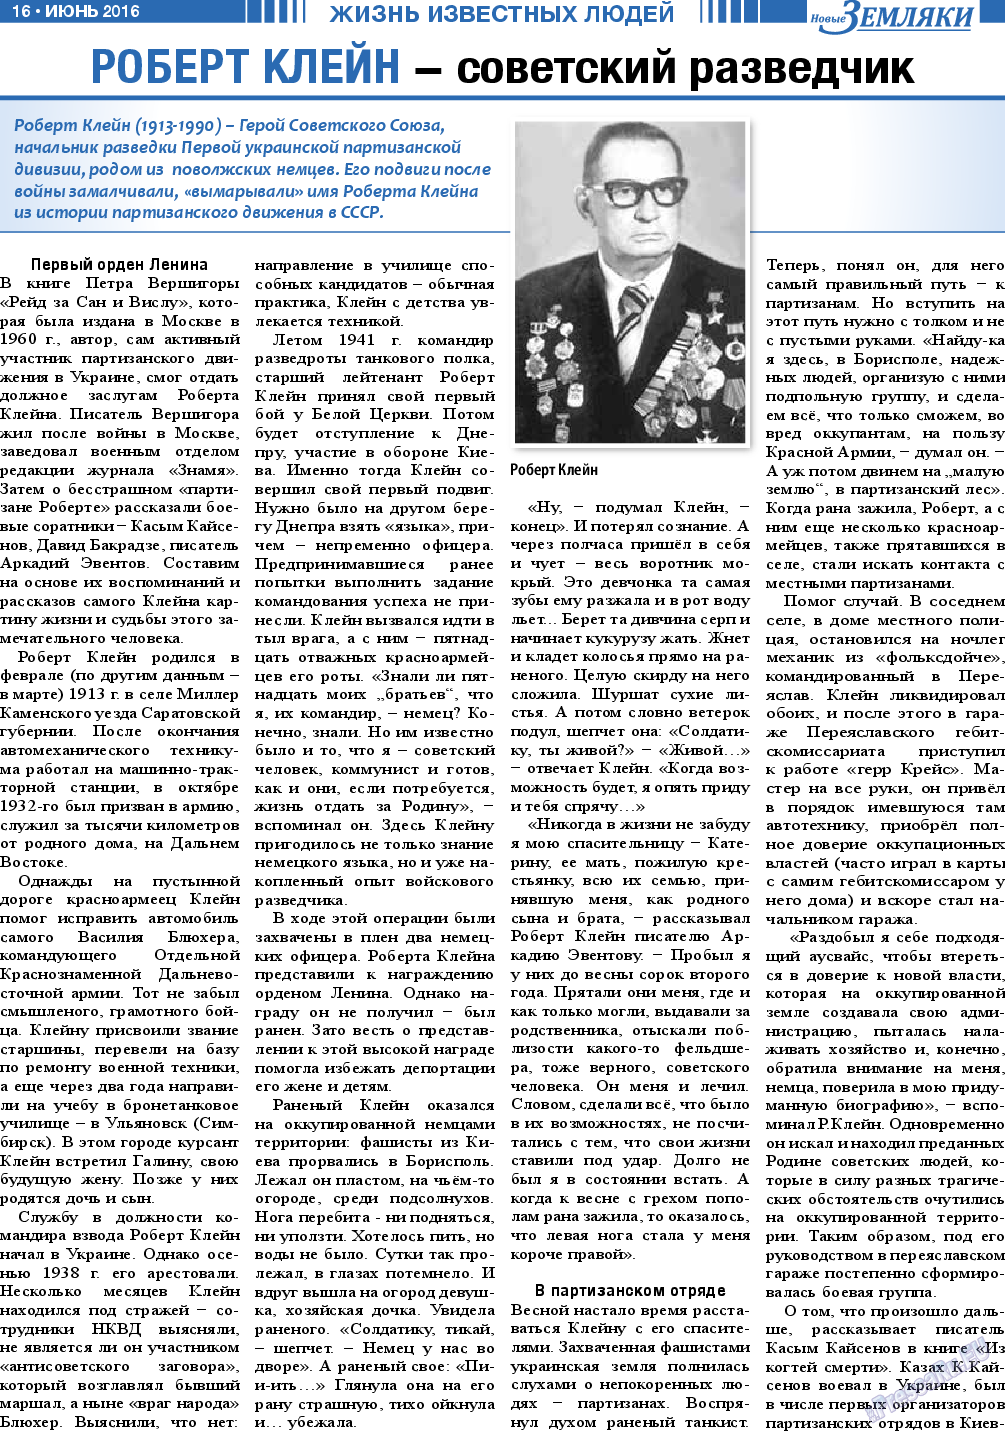 Новые Земляки, газета. 2016 №6 стр.16